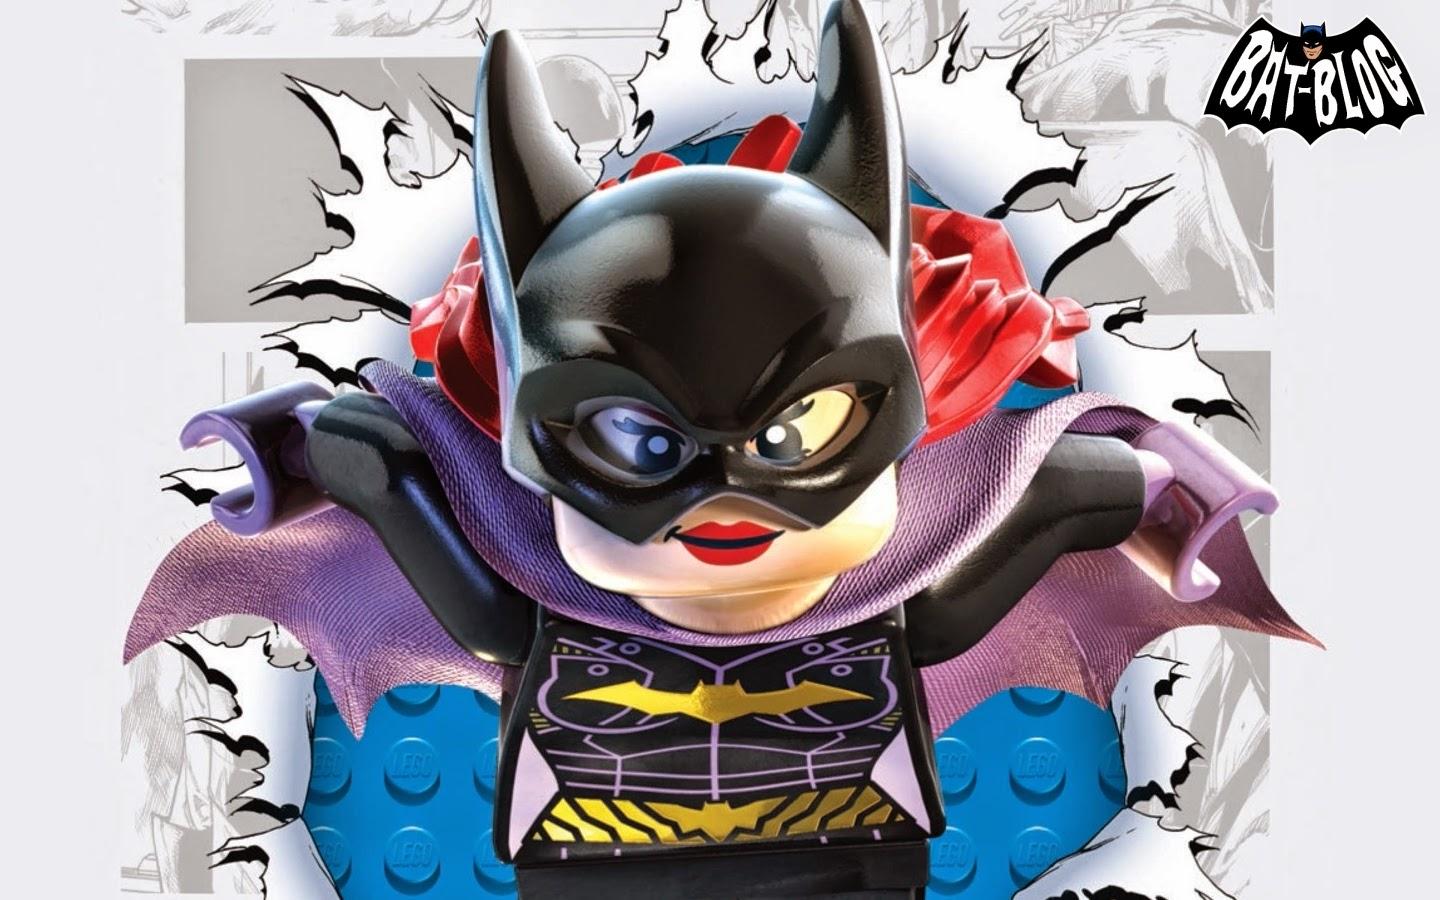 LEGO BATMAN 3 BEYOND GOTHAM Game WALLPAPERS! About Batman